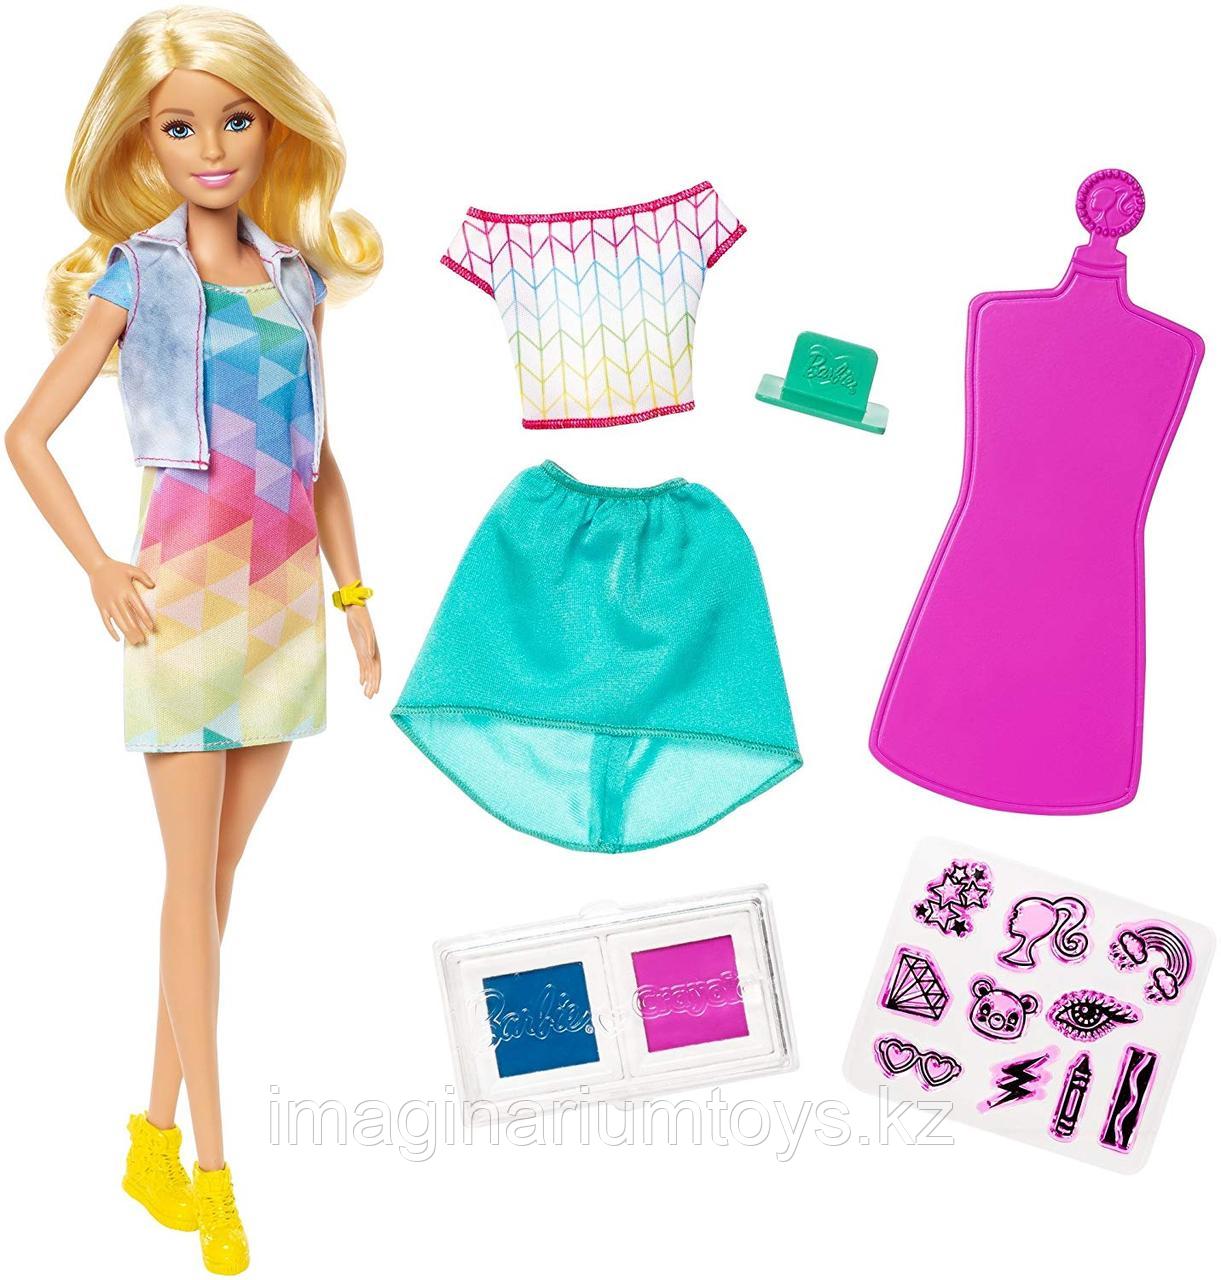 Кукла Барби модница с комплектом одежды Crayola